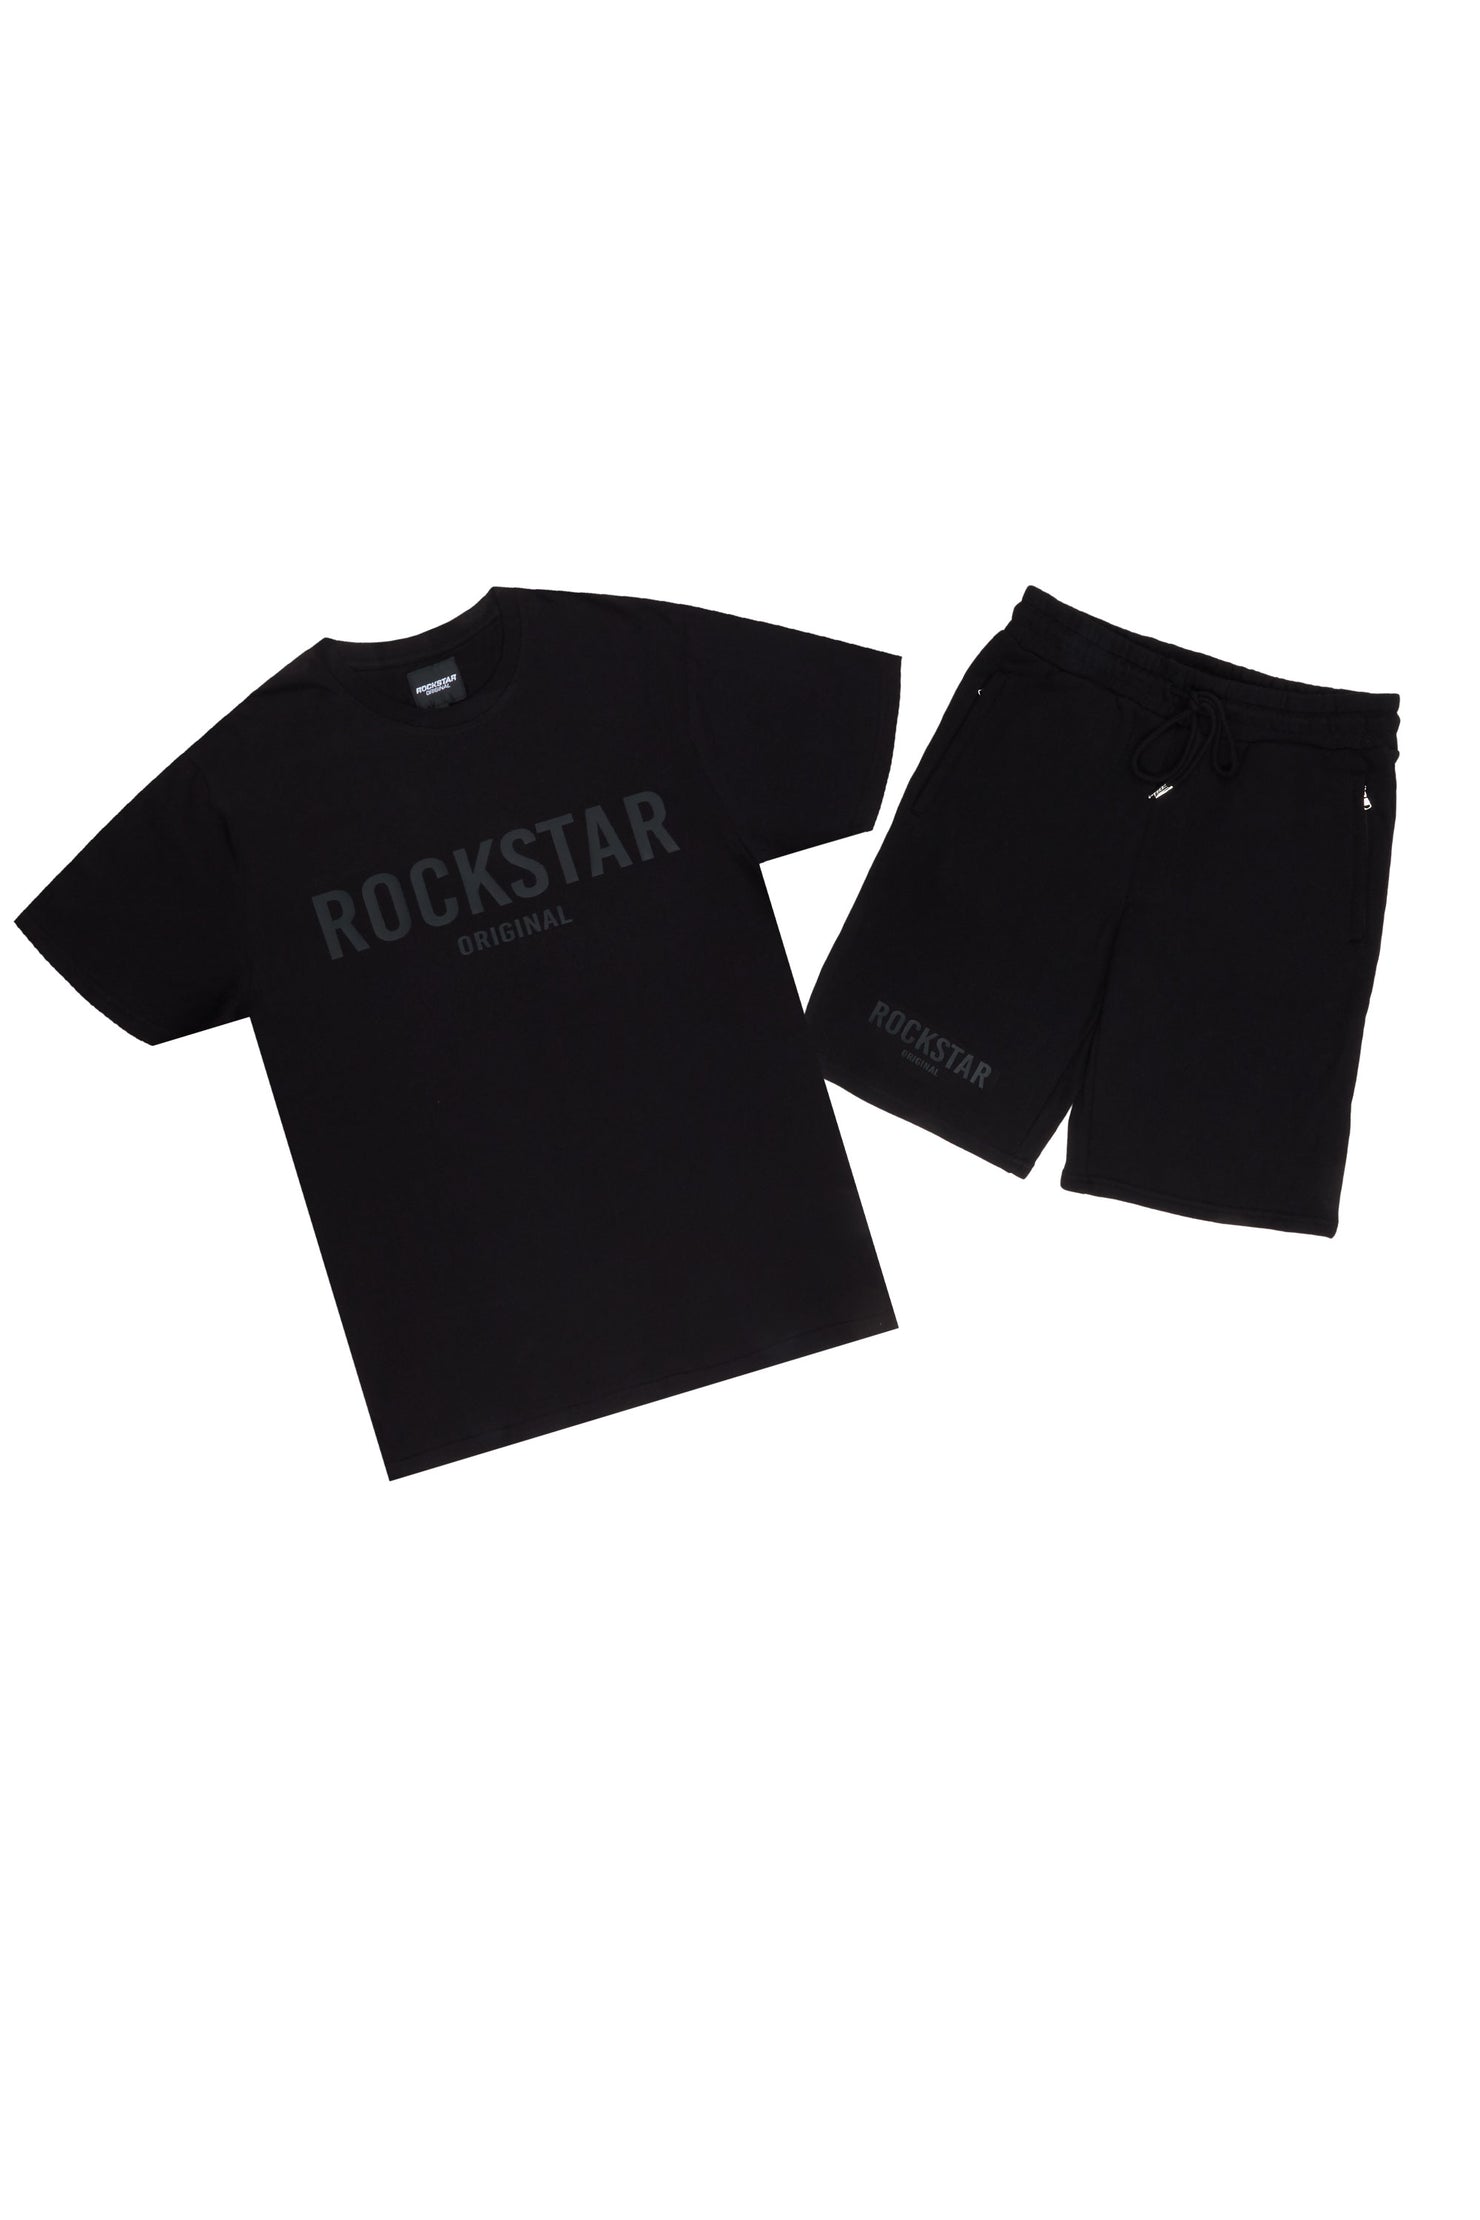 Rockstar Casey Black T-Shirt/Short Set